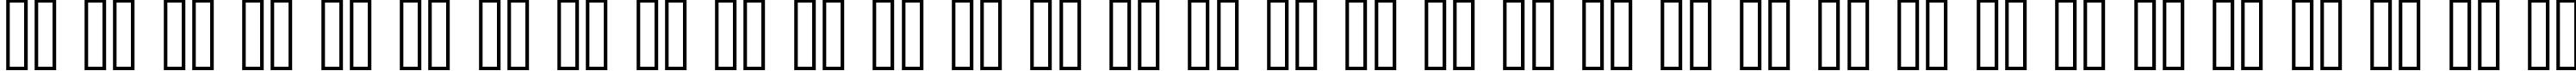 Пример написания русского алфавита шрифтом copy 08_66